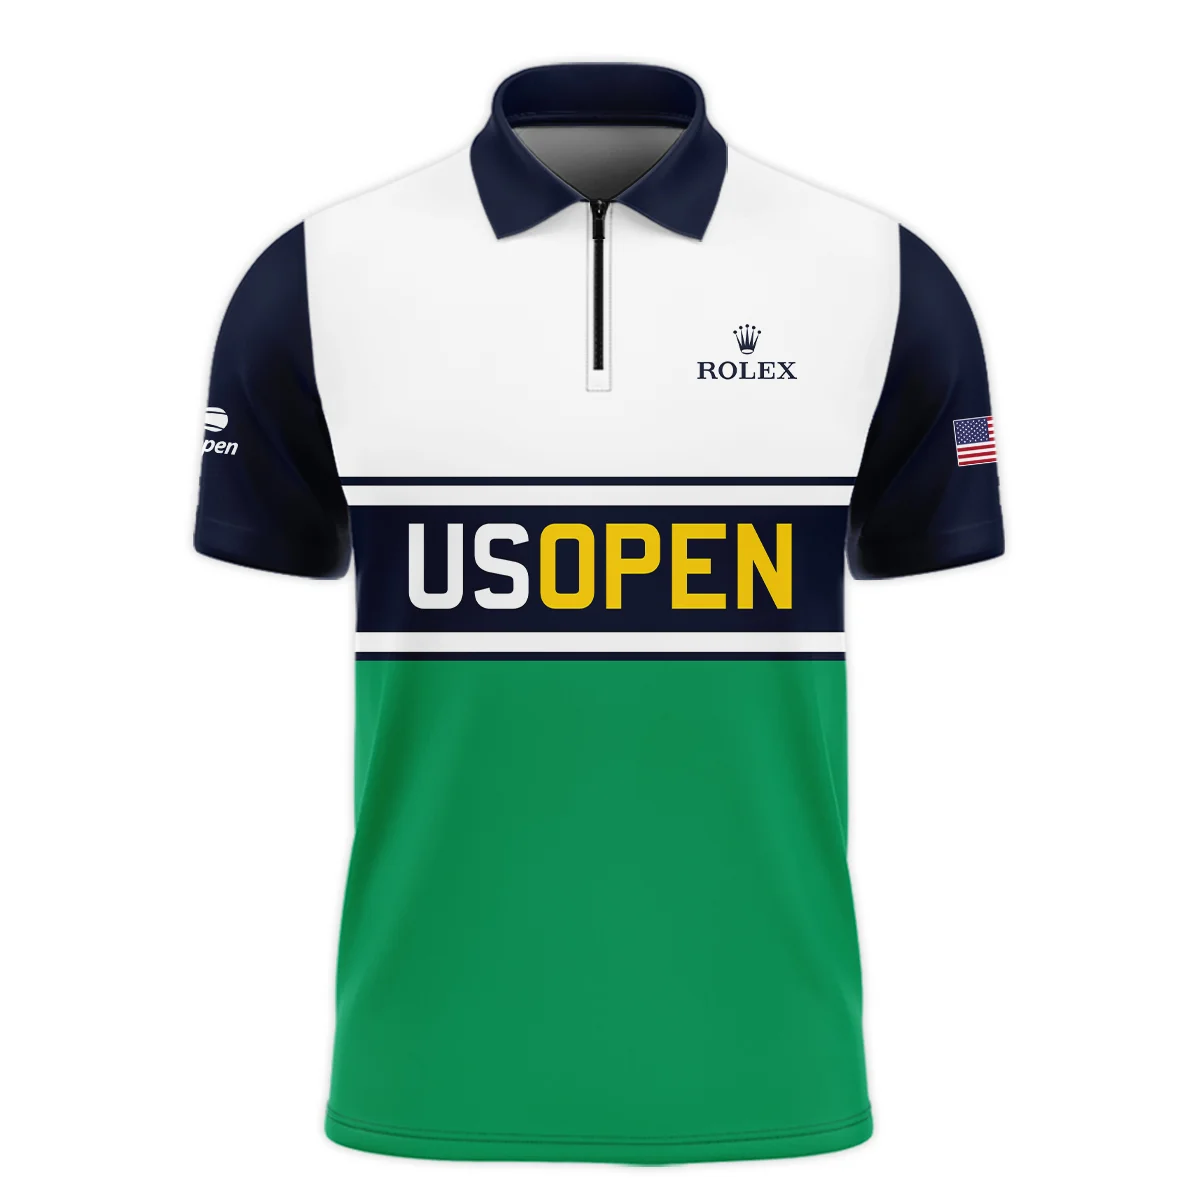 Tennis Love Sport Mix Color US Open Tennis Champions Rolex Unisex T-Shirt Style Classic T-Shirt